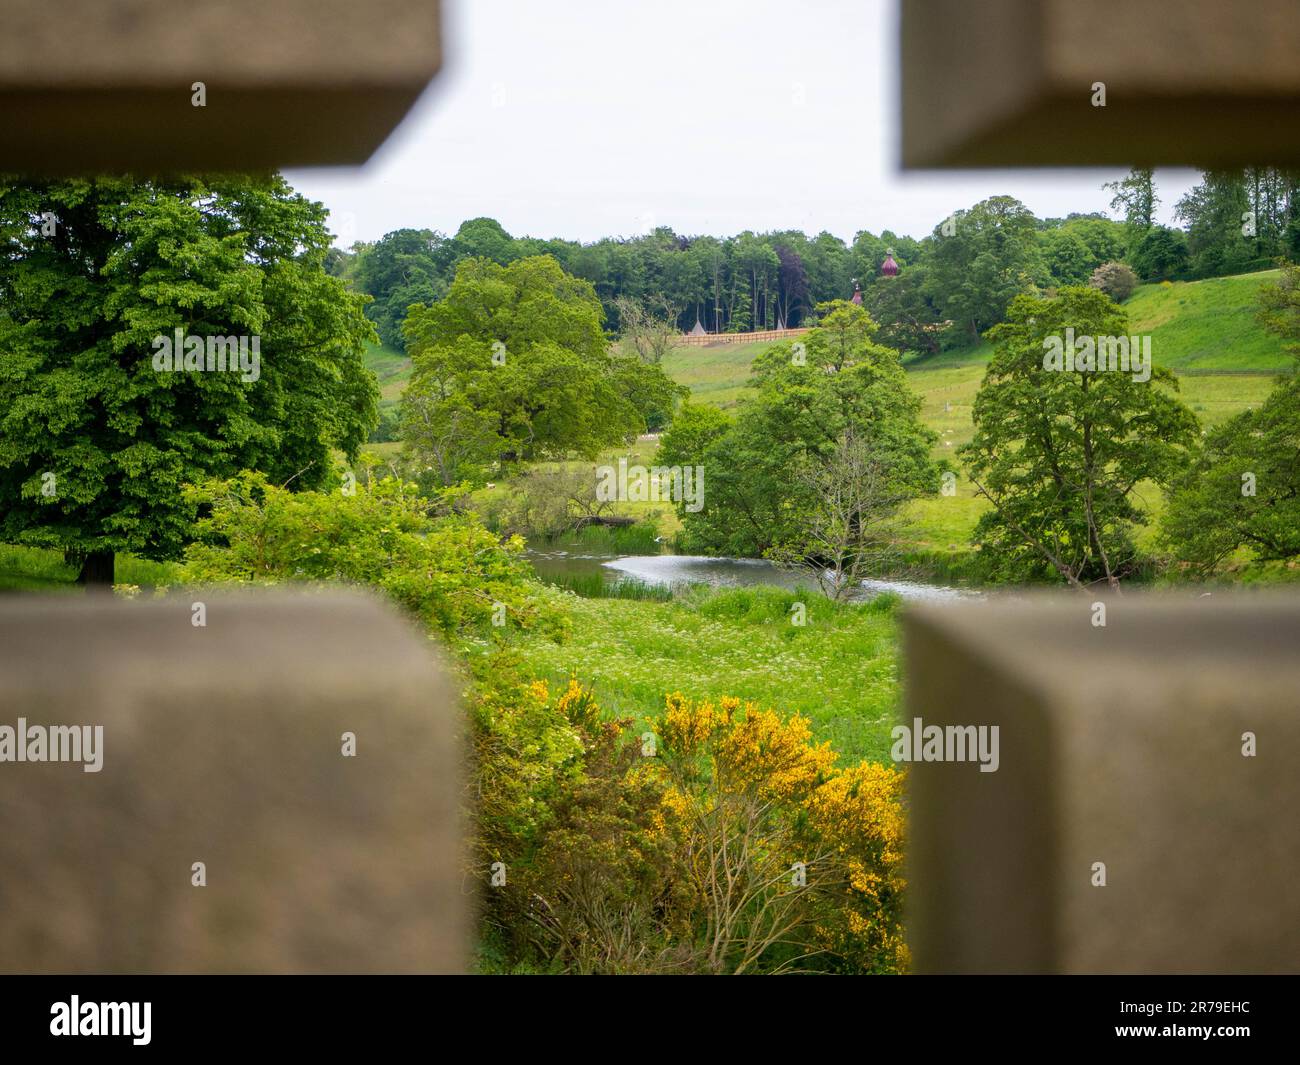 Pont traversant la rivière ALN à Alnwick, Northumberland, Royaume-Uni, capturant le paysage du parc Hulne, les pâturages conçus par Capability Brown Banque D'Images